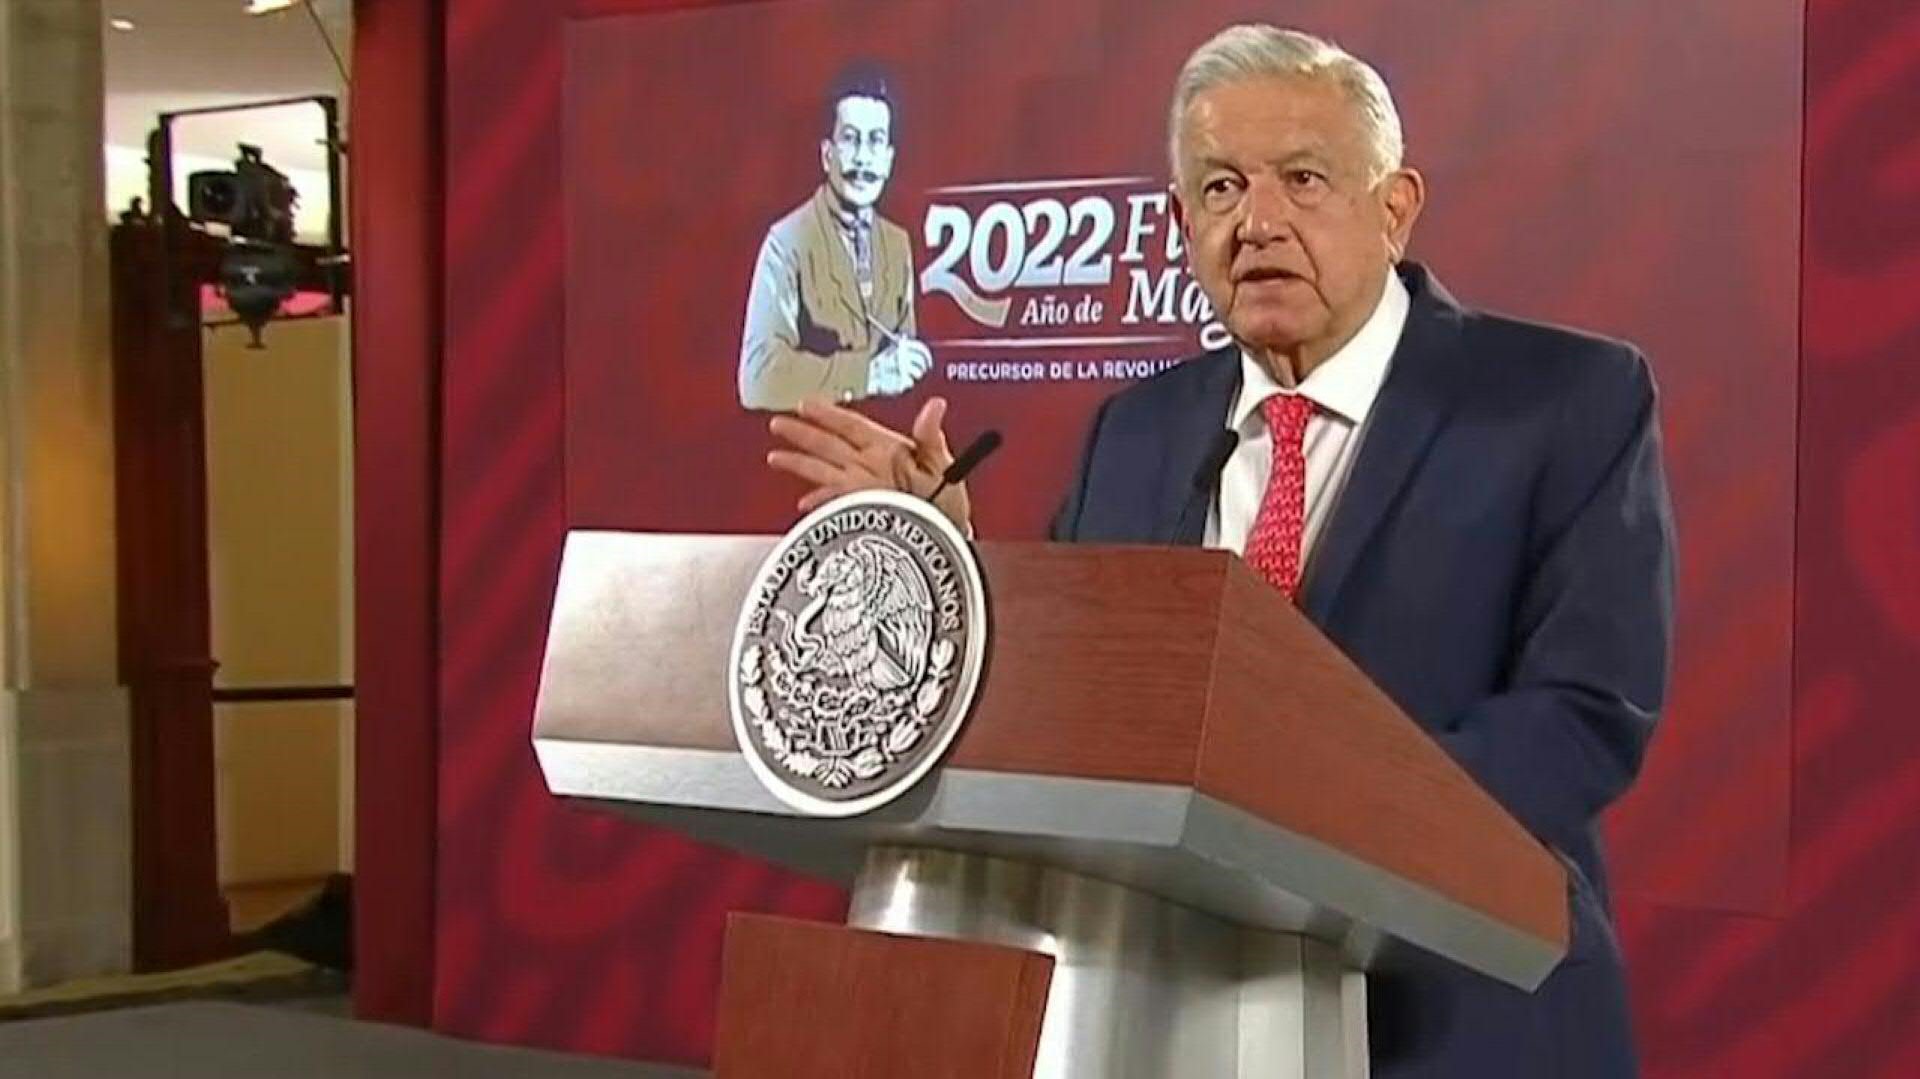 El presidente de México, Andrés Manuel López Obrador, propuso reducir el número de legisladores como parte de una reforma del sistema político y electoral, cuya negociación en el Congreso se anticipa complicada (Foto: AFP)